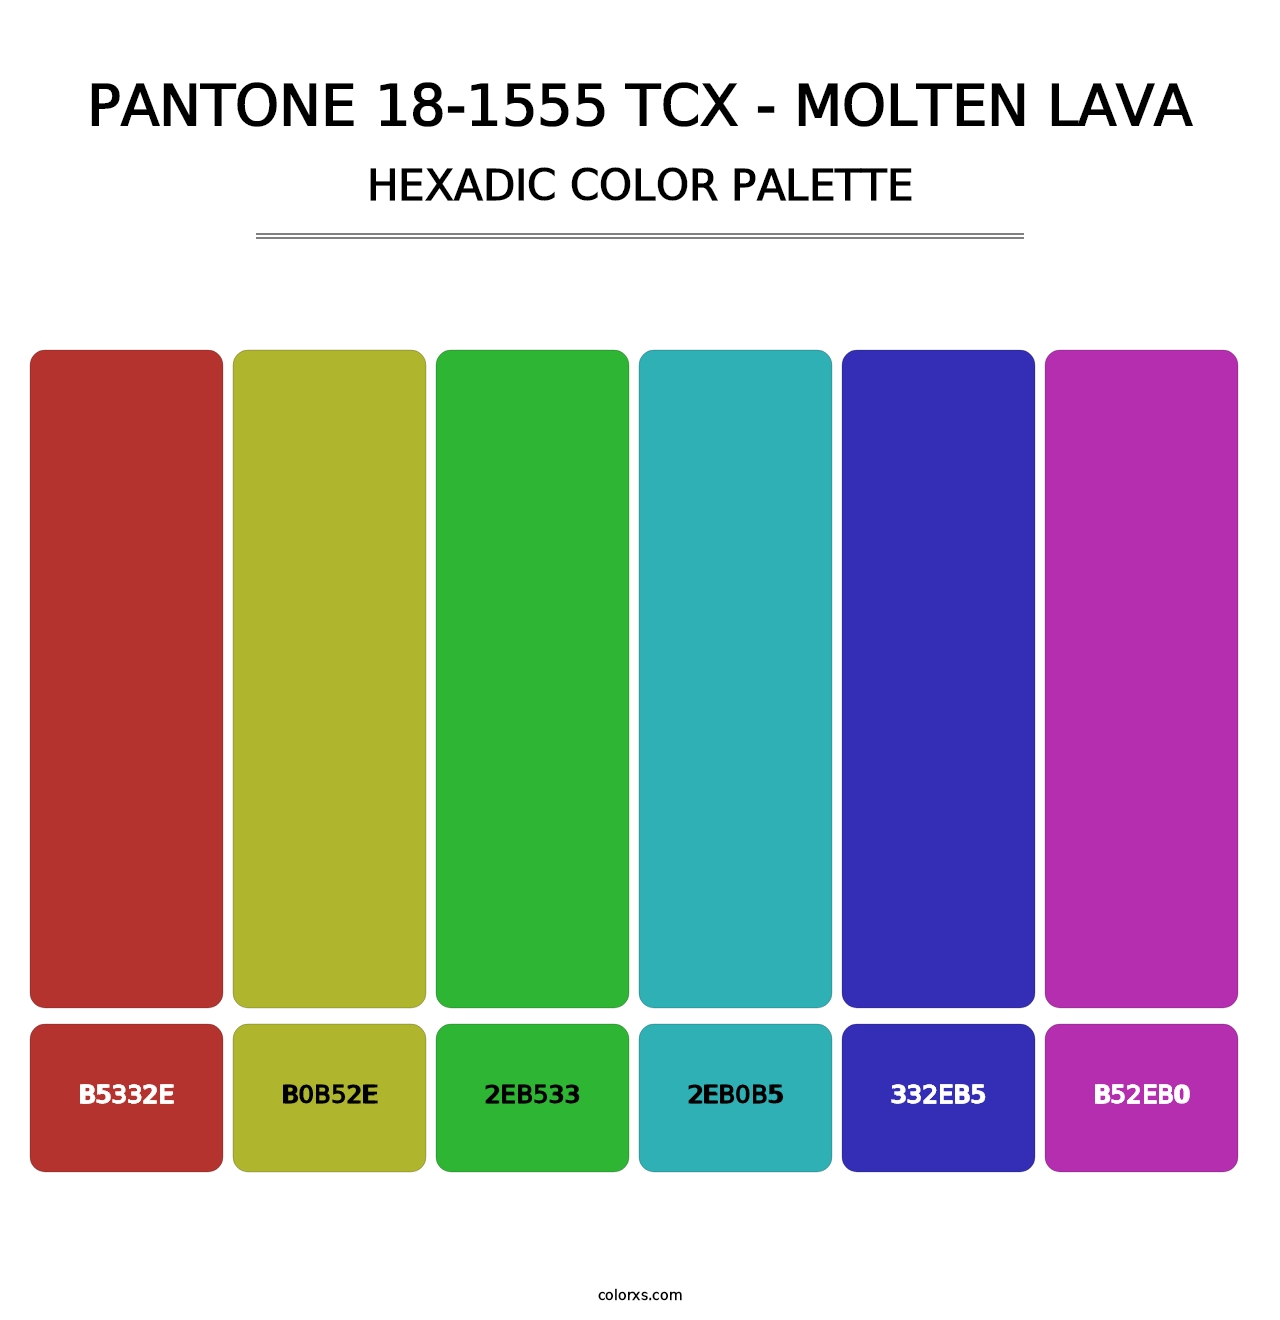 PANTONE 18-1555 TCX - Molten Lava - Hexadic Color Palette